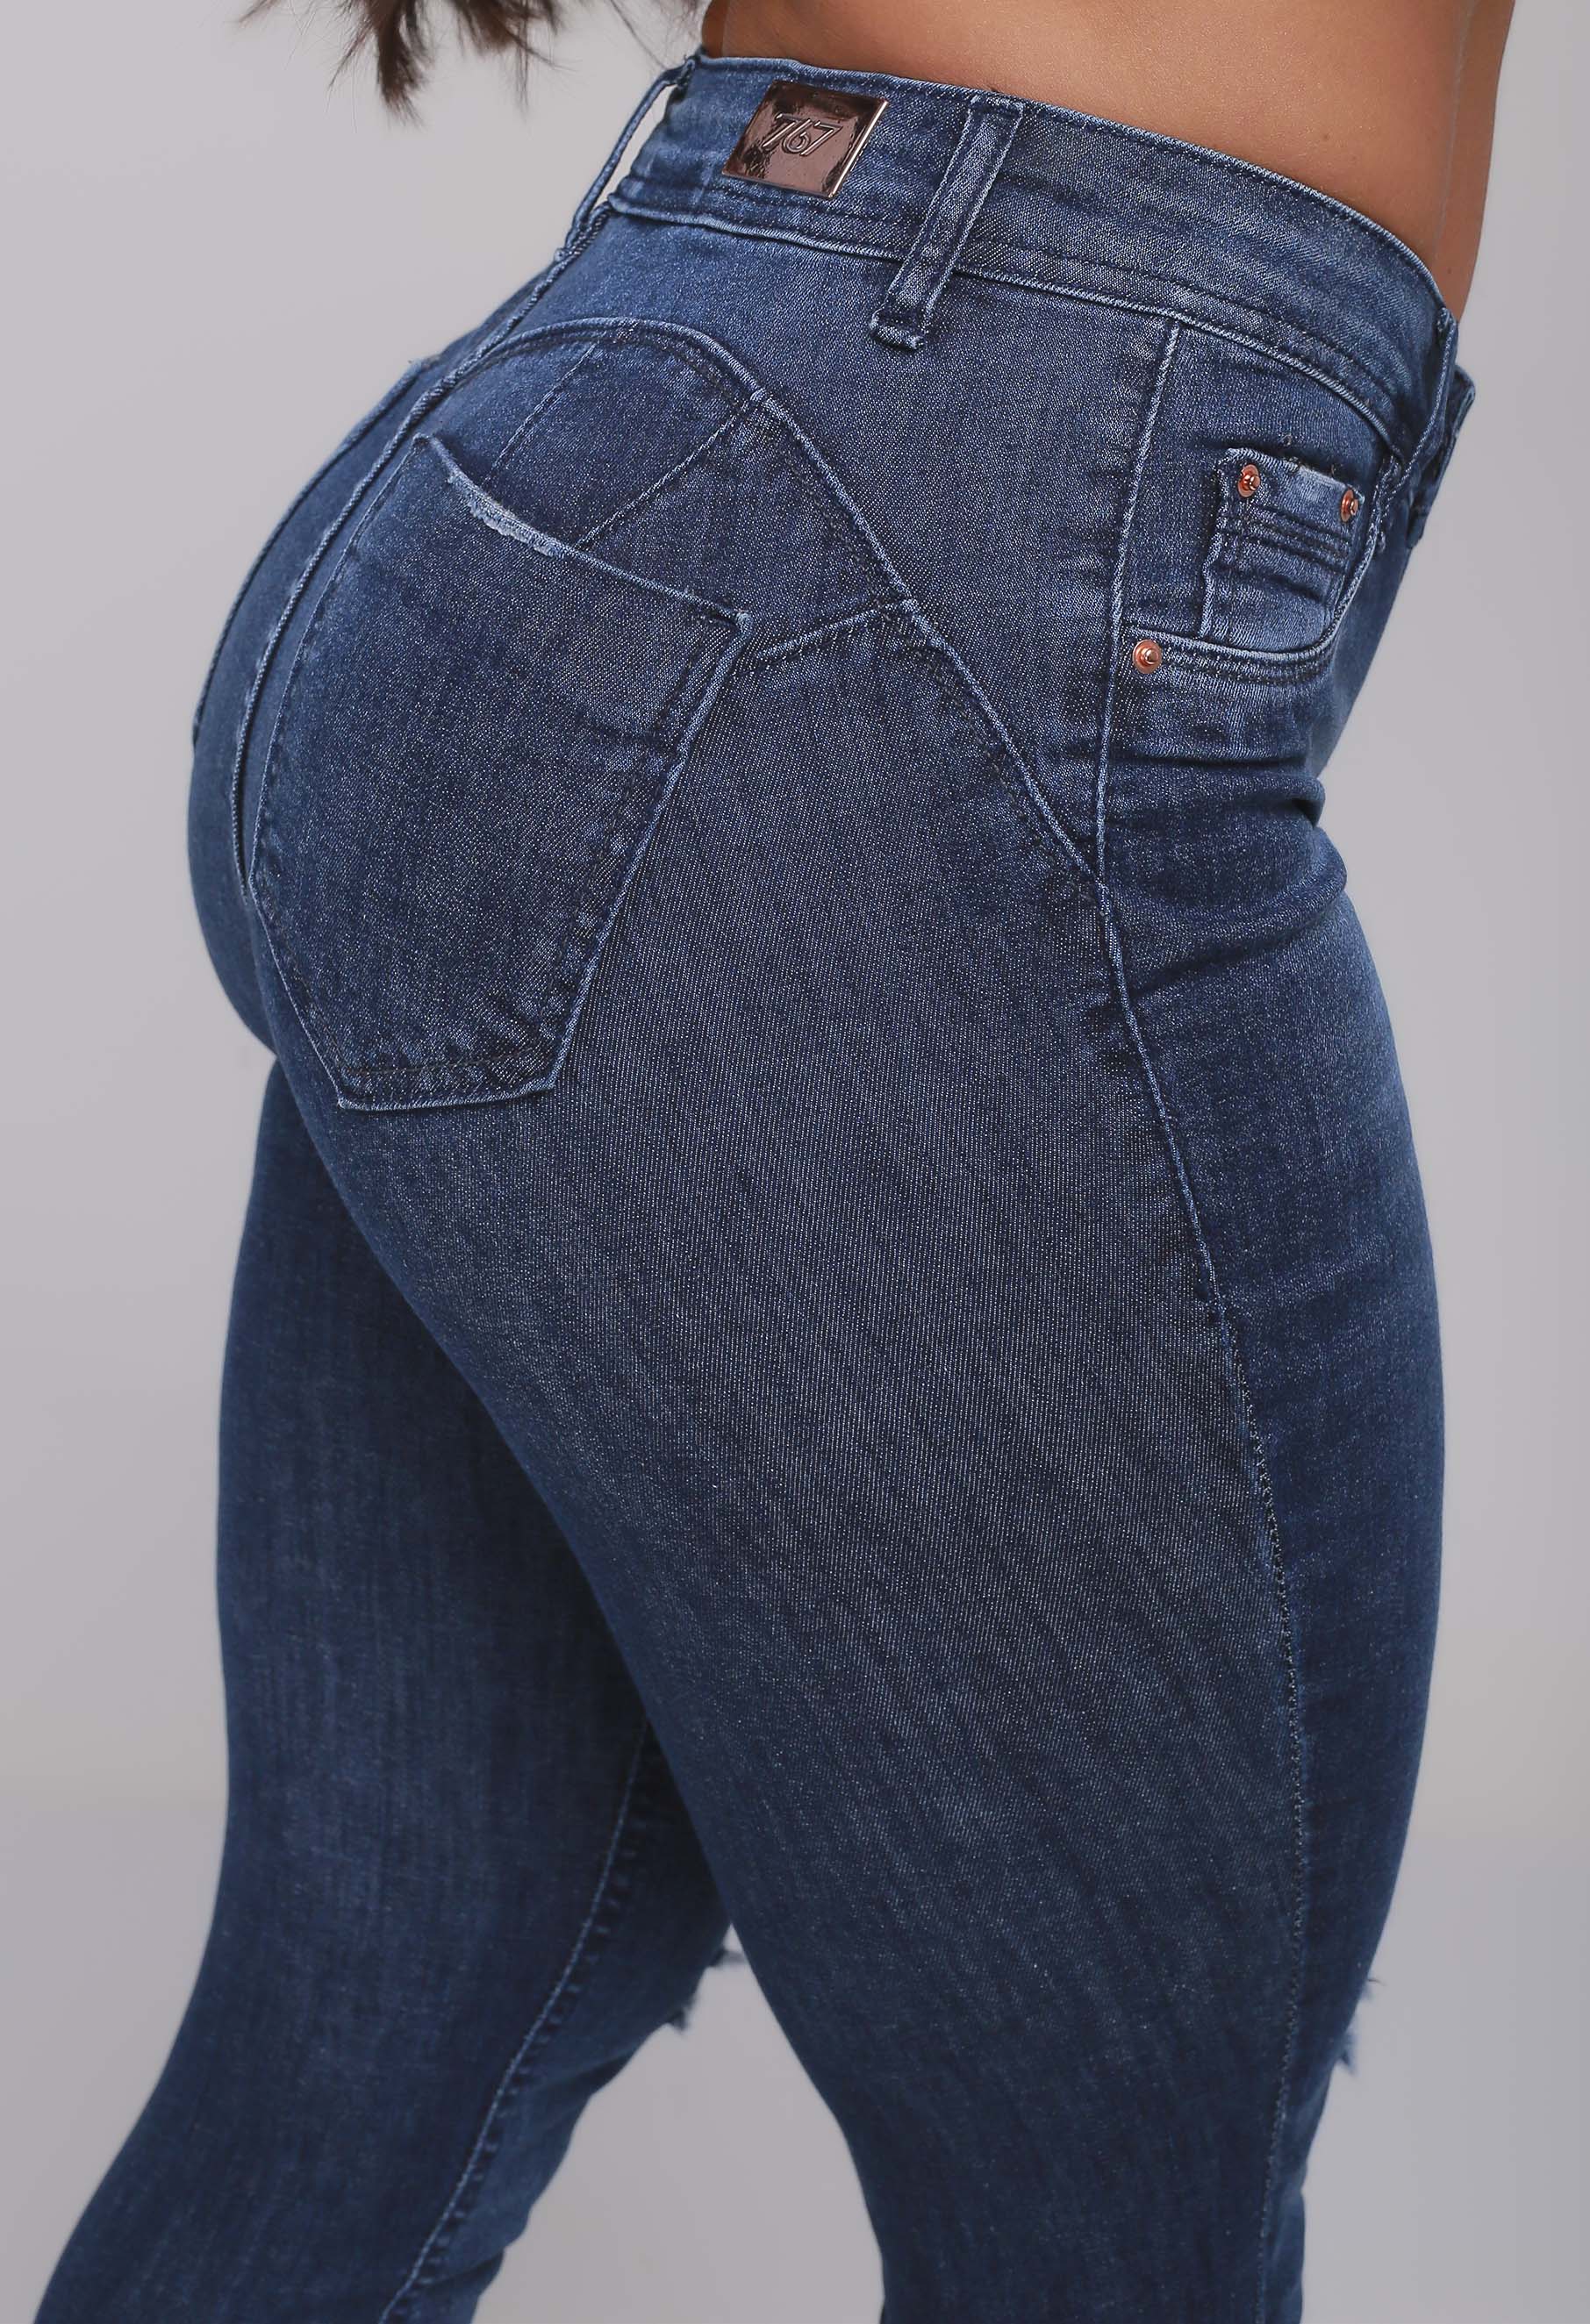 Calça Jeans Skinny Feminina Levanta Bumbum Puído no Joelho - 767 Jeans -  Moda Jeans Wear Feminina, Masculina e Plus Size